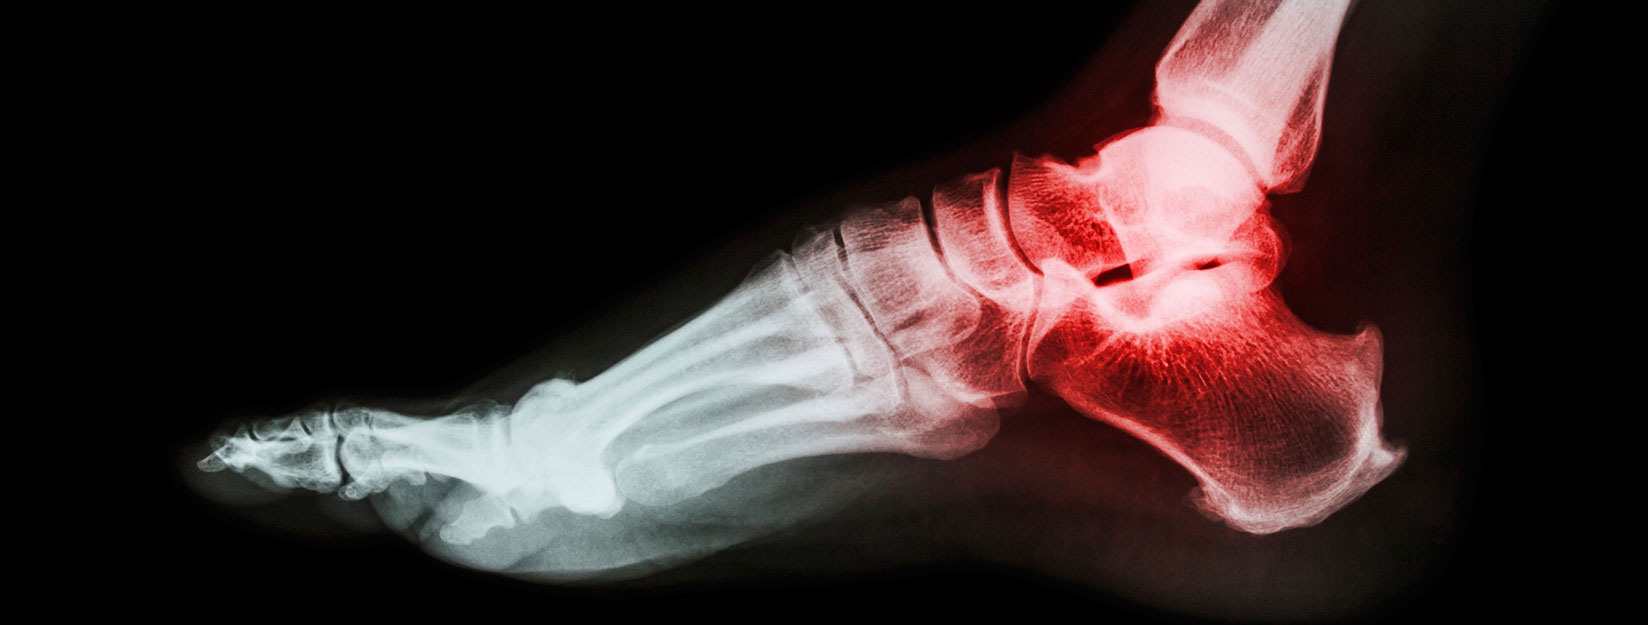 Esguince de tobillo: una lesión frecuente que se debe tratar